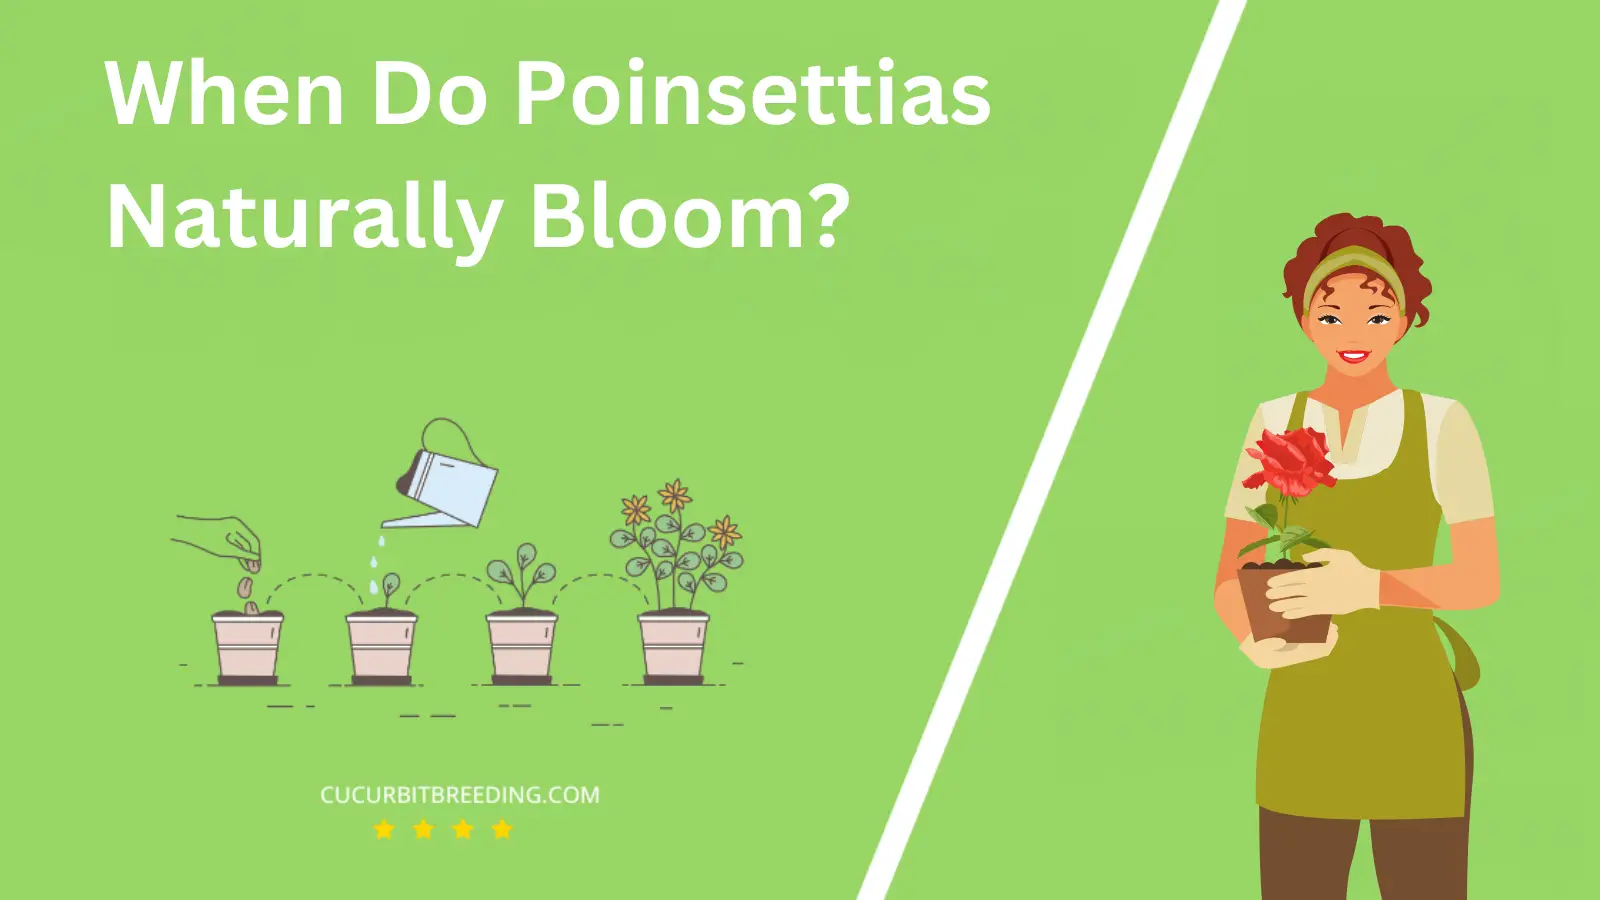 When Do Poinsettias Naturally Bloom?